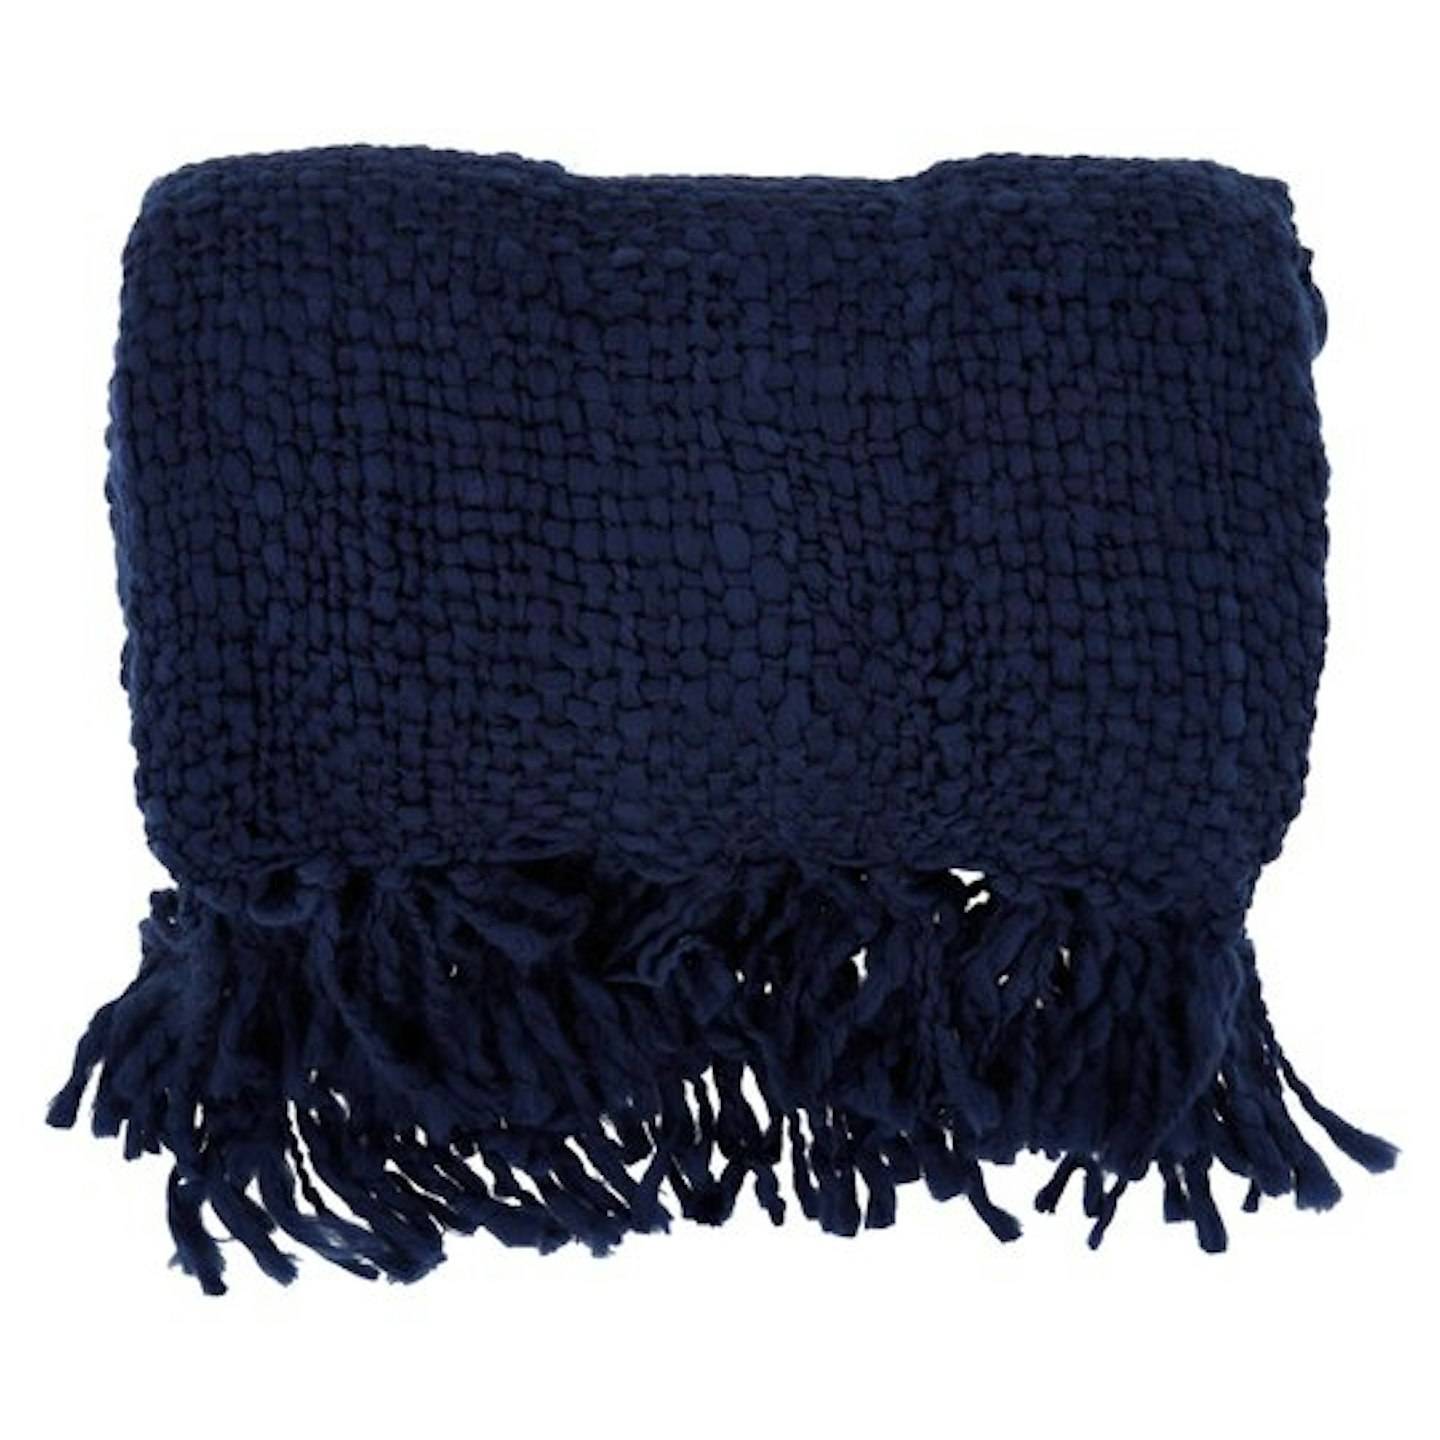 Tesco, Woven Knit Throw Navy, £18